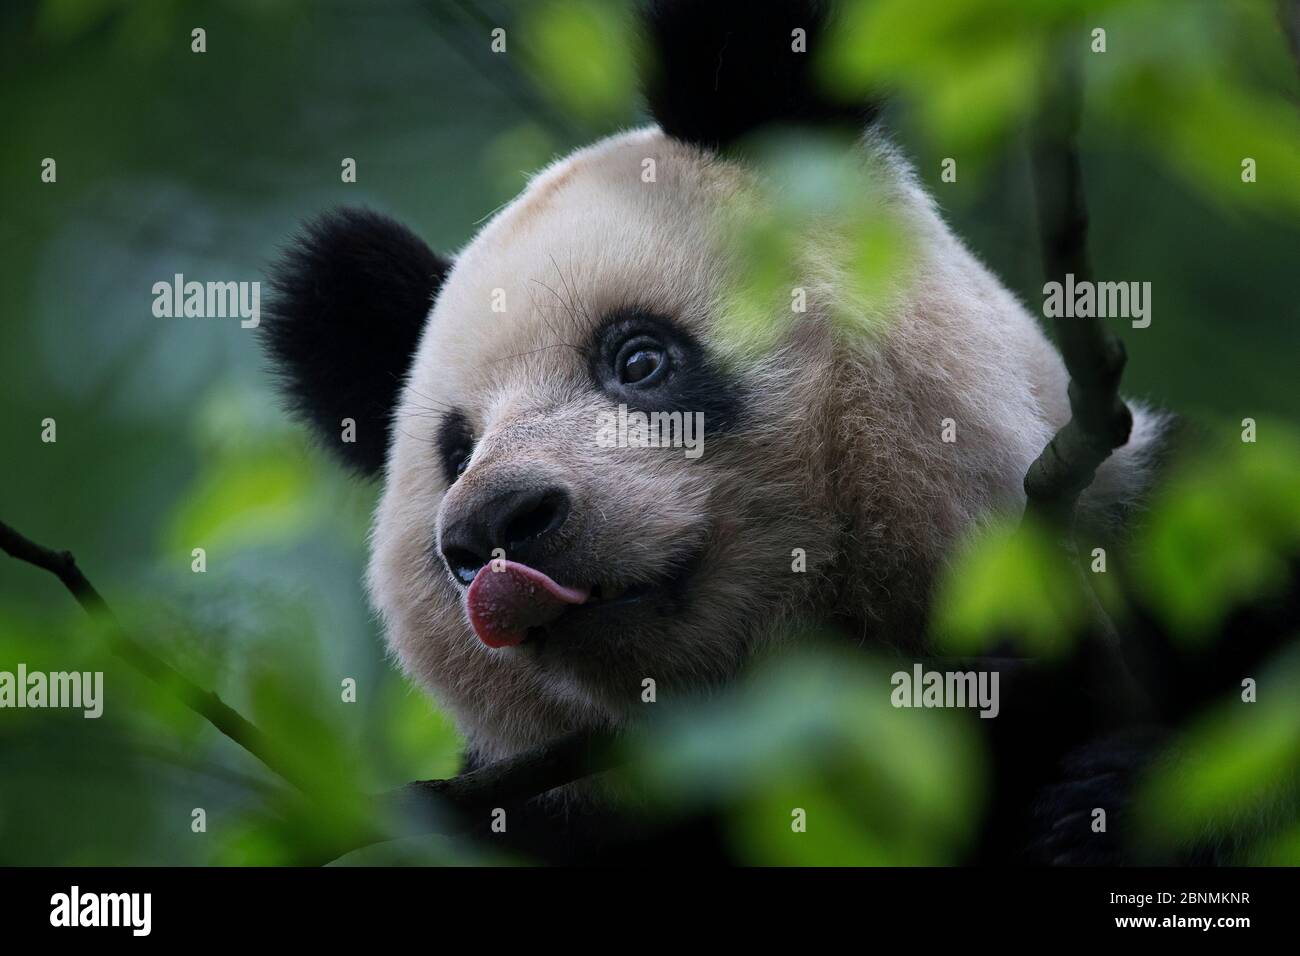 Panda géante (Ailuropoda melanoleuca) dans un arbre, avec langue sortie, captive, Chine Banque D'Images